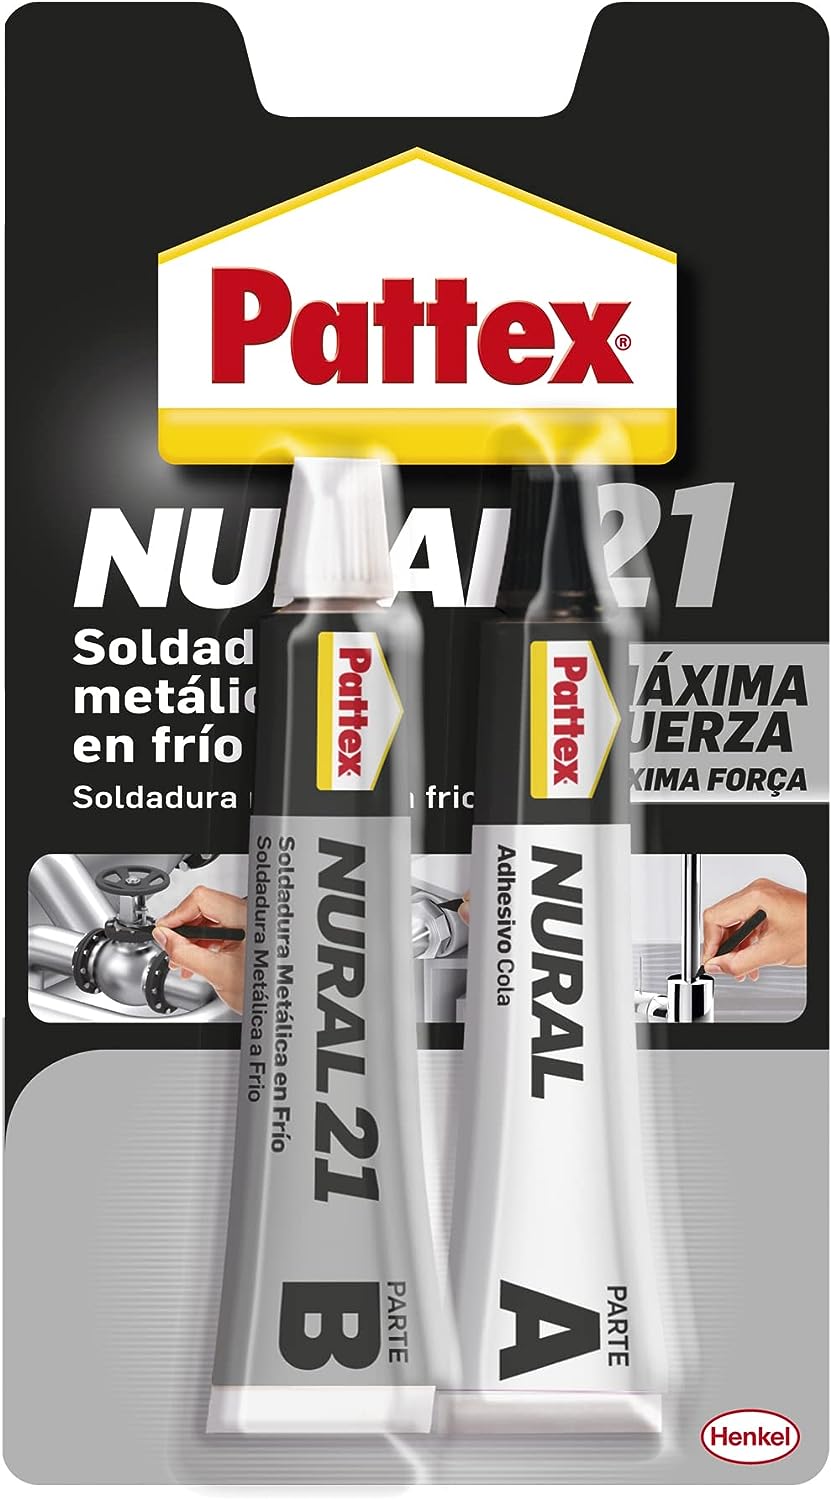 TUBO PATTEX NURAL 21 MEDIO 22 ML - TUBO PATEX-NURAL